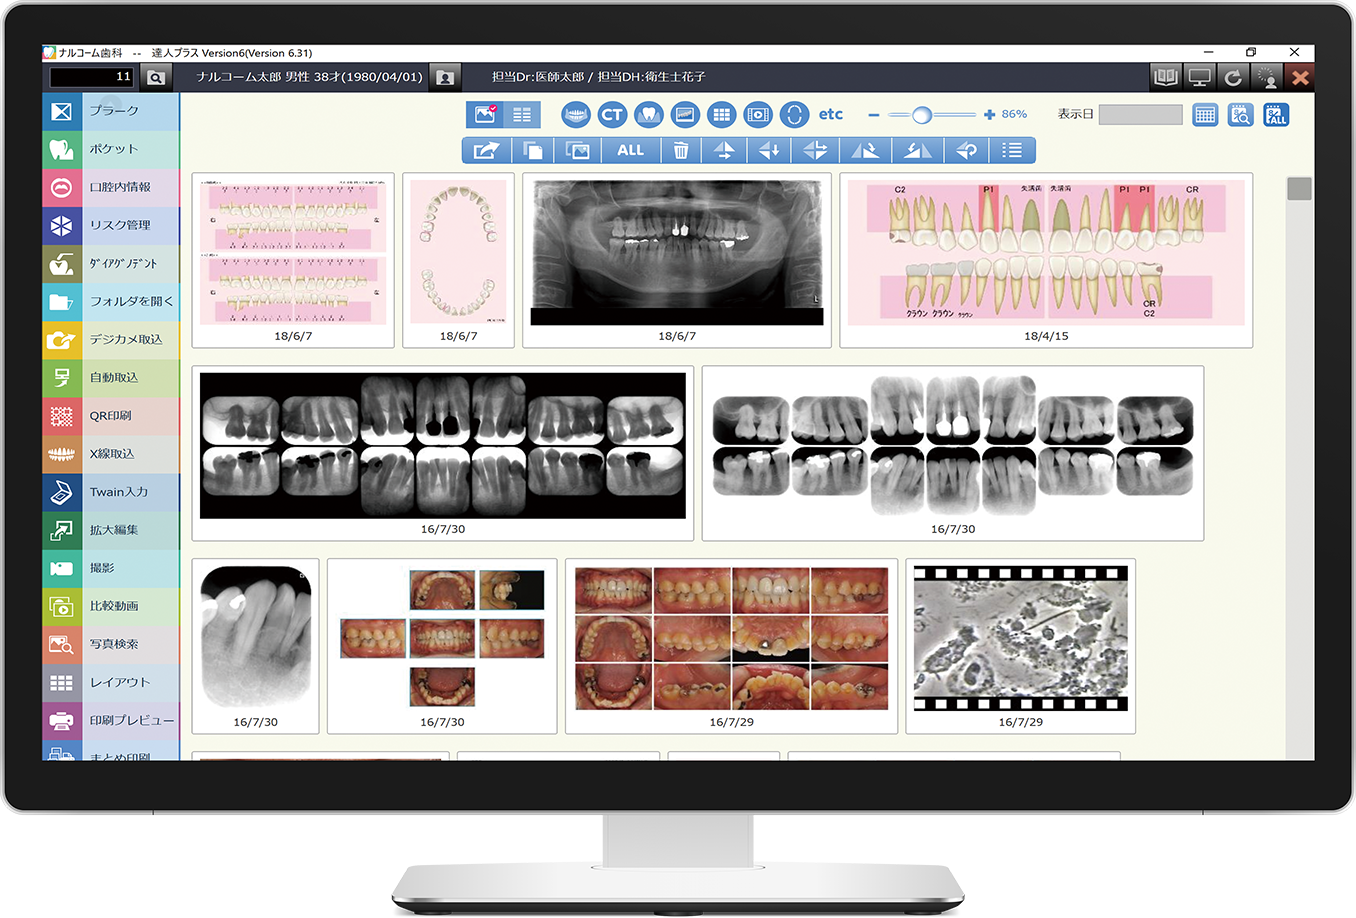 達人プラスversion6 歯科医院用患者管理支援ソフト 歯周検査 画像 動画管理